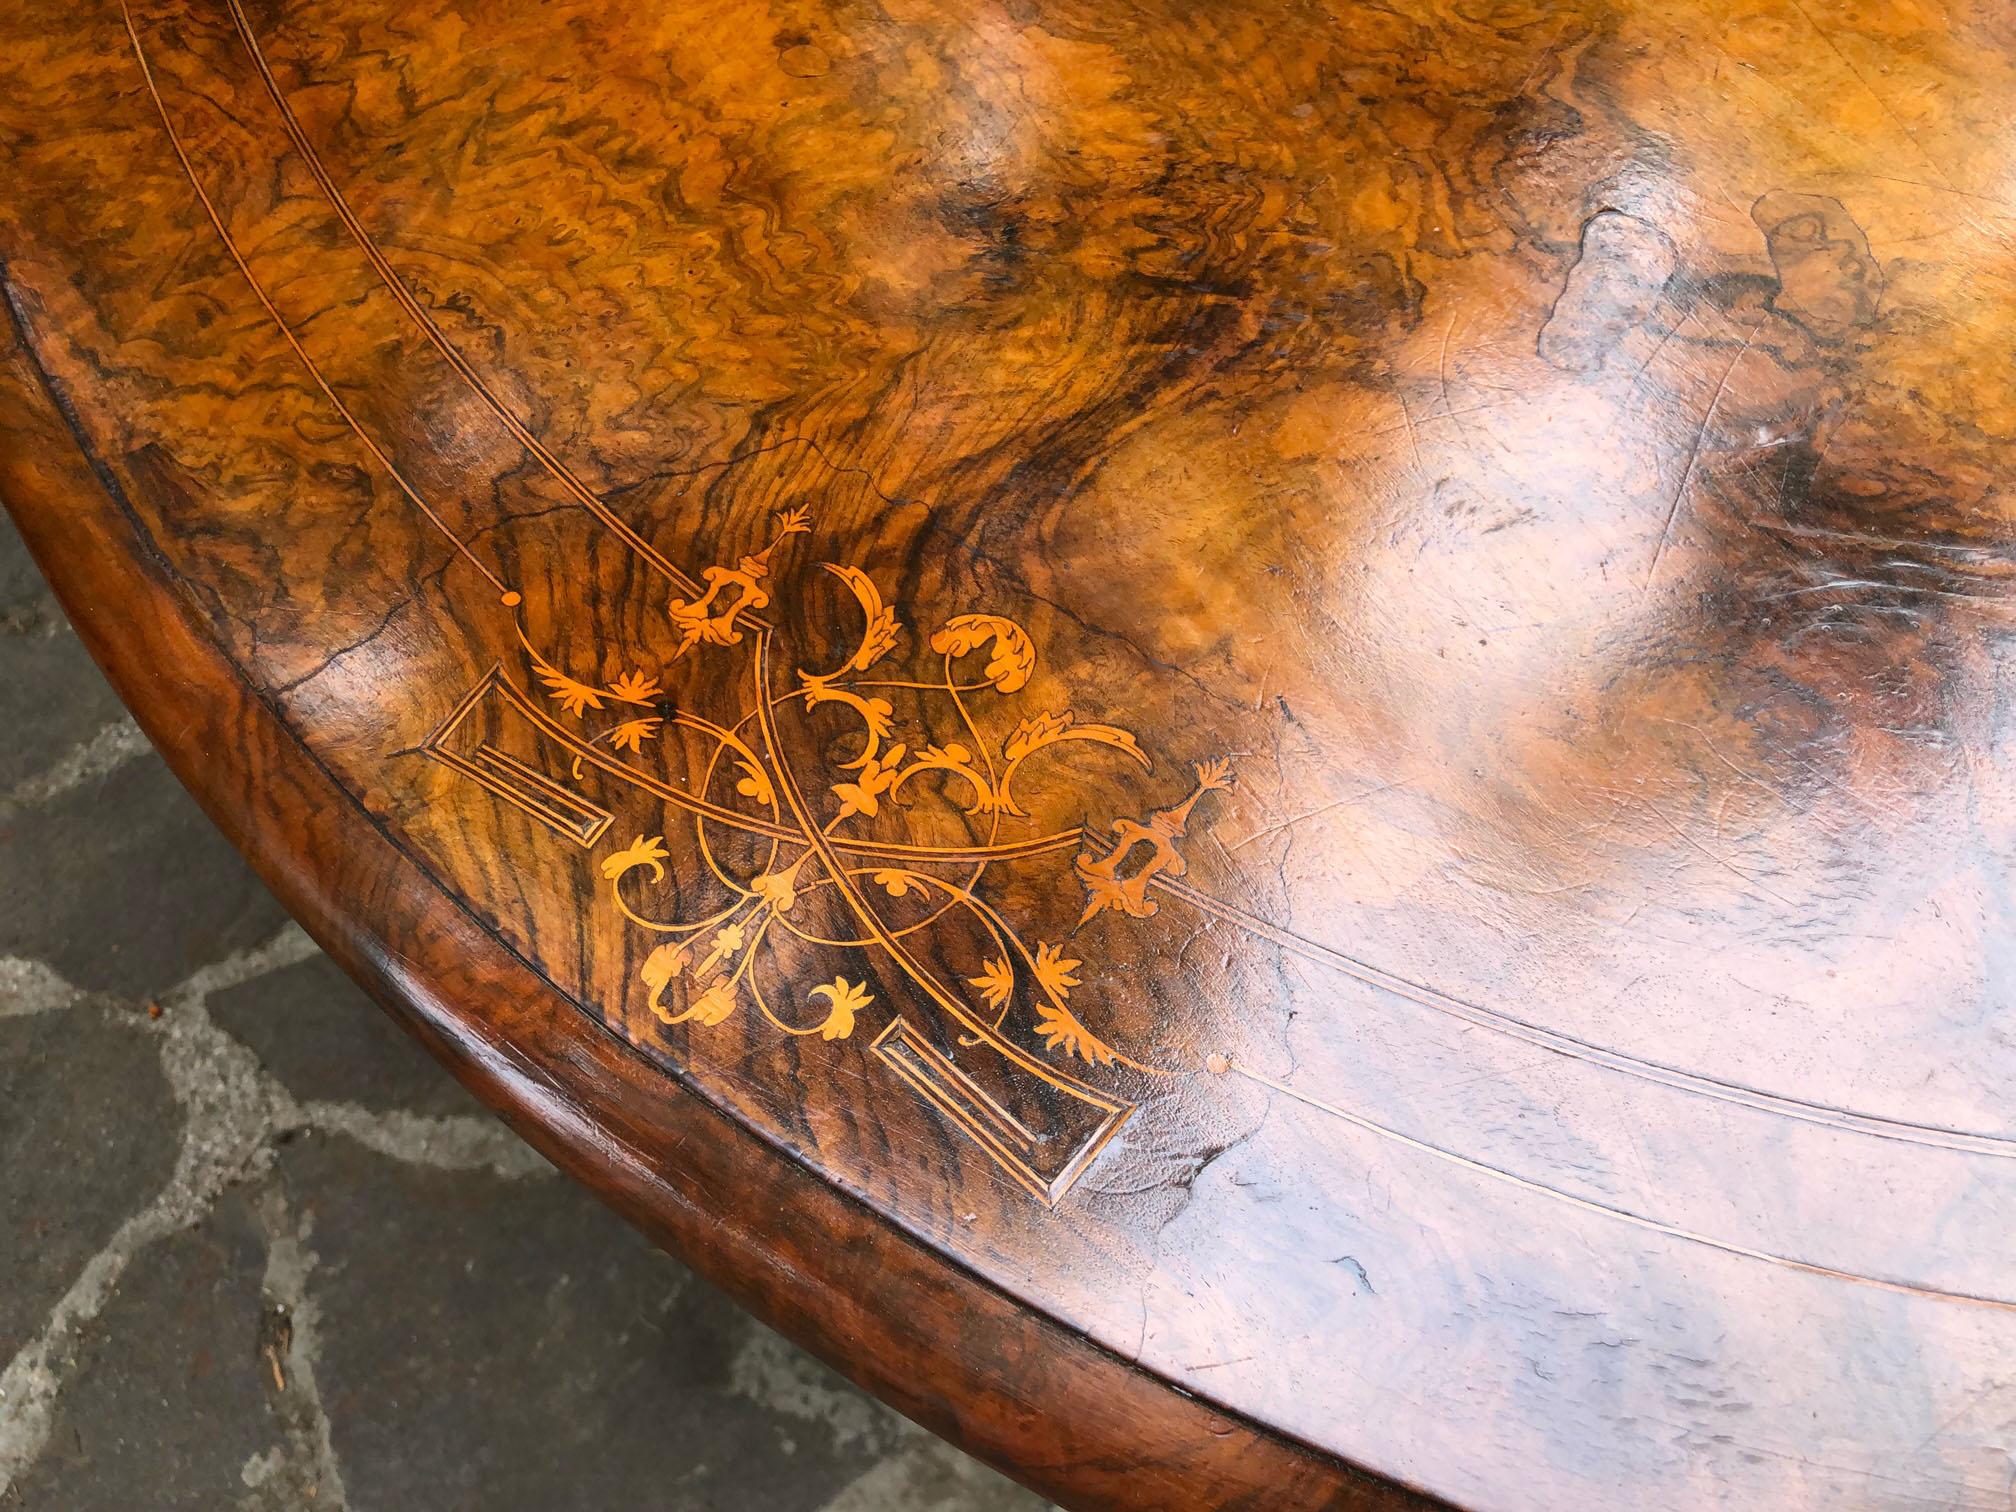 Table à voile ovale en noyer racine de bruyère, de 1900, originale de Toscane.
Plateau élégant incrusté, pieds en bois massif.
Vient d'une vieille maison de campagne dans la région du Chianti en Toscane.
La peinture est originale en patine,